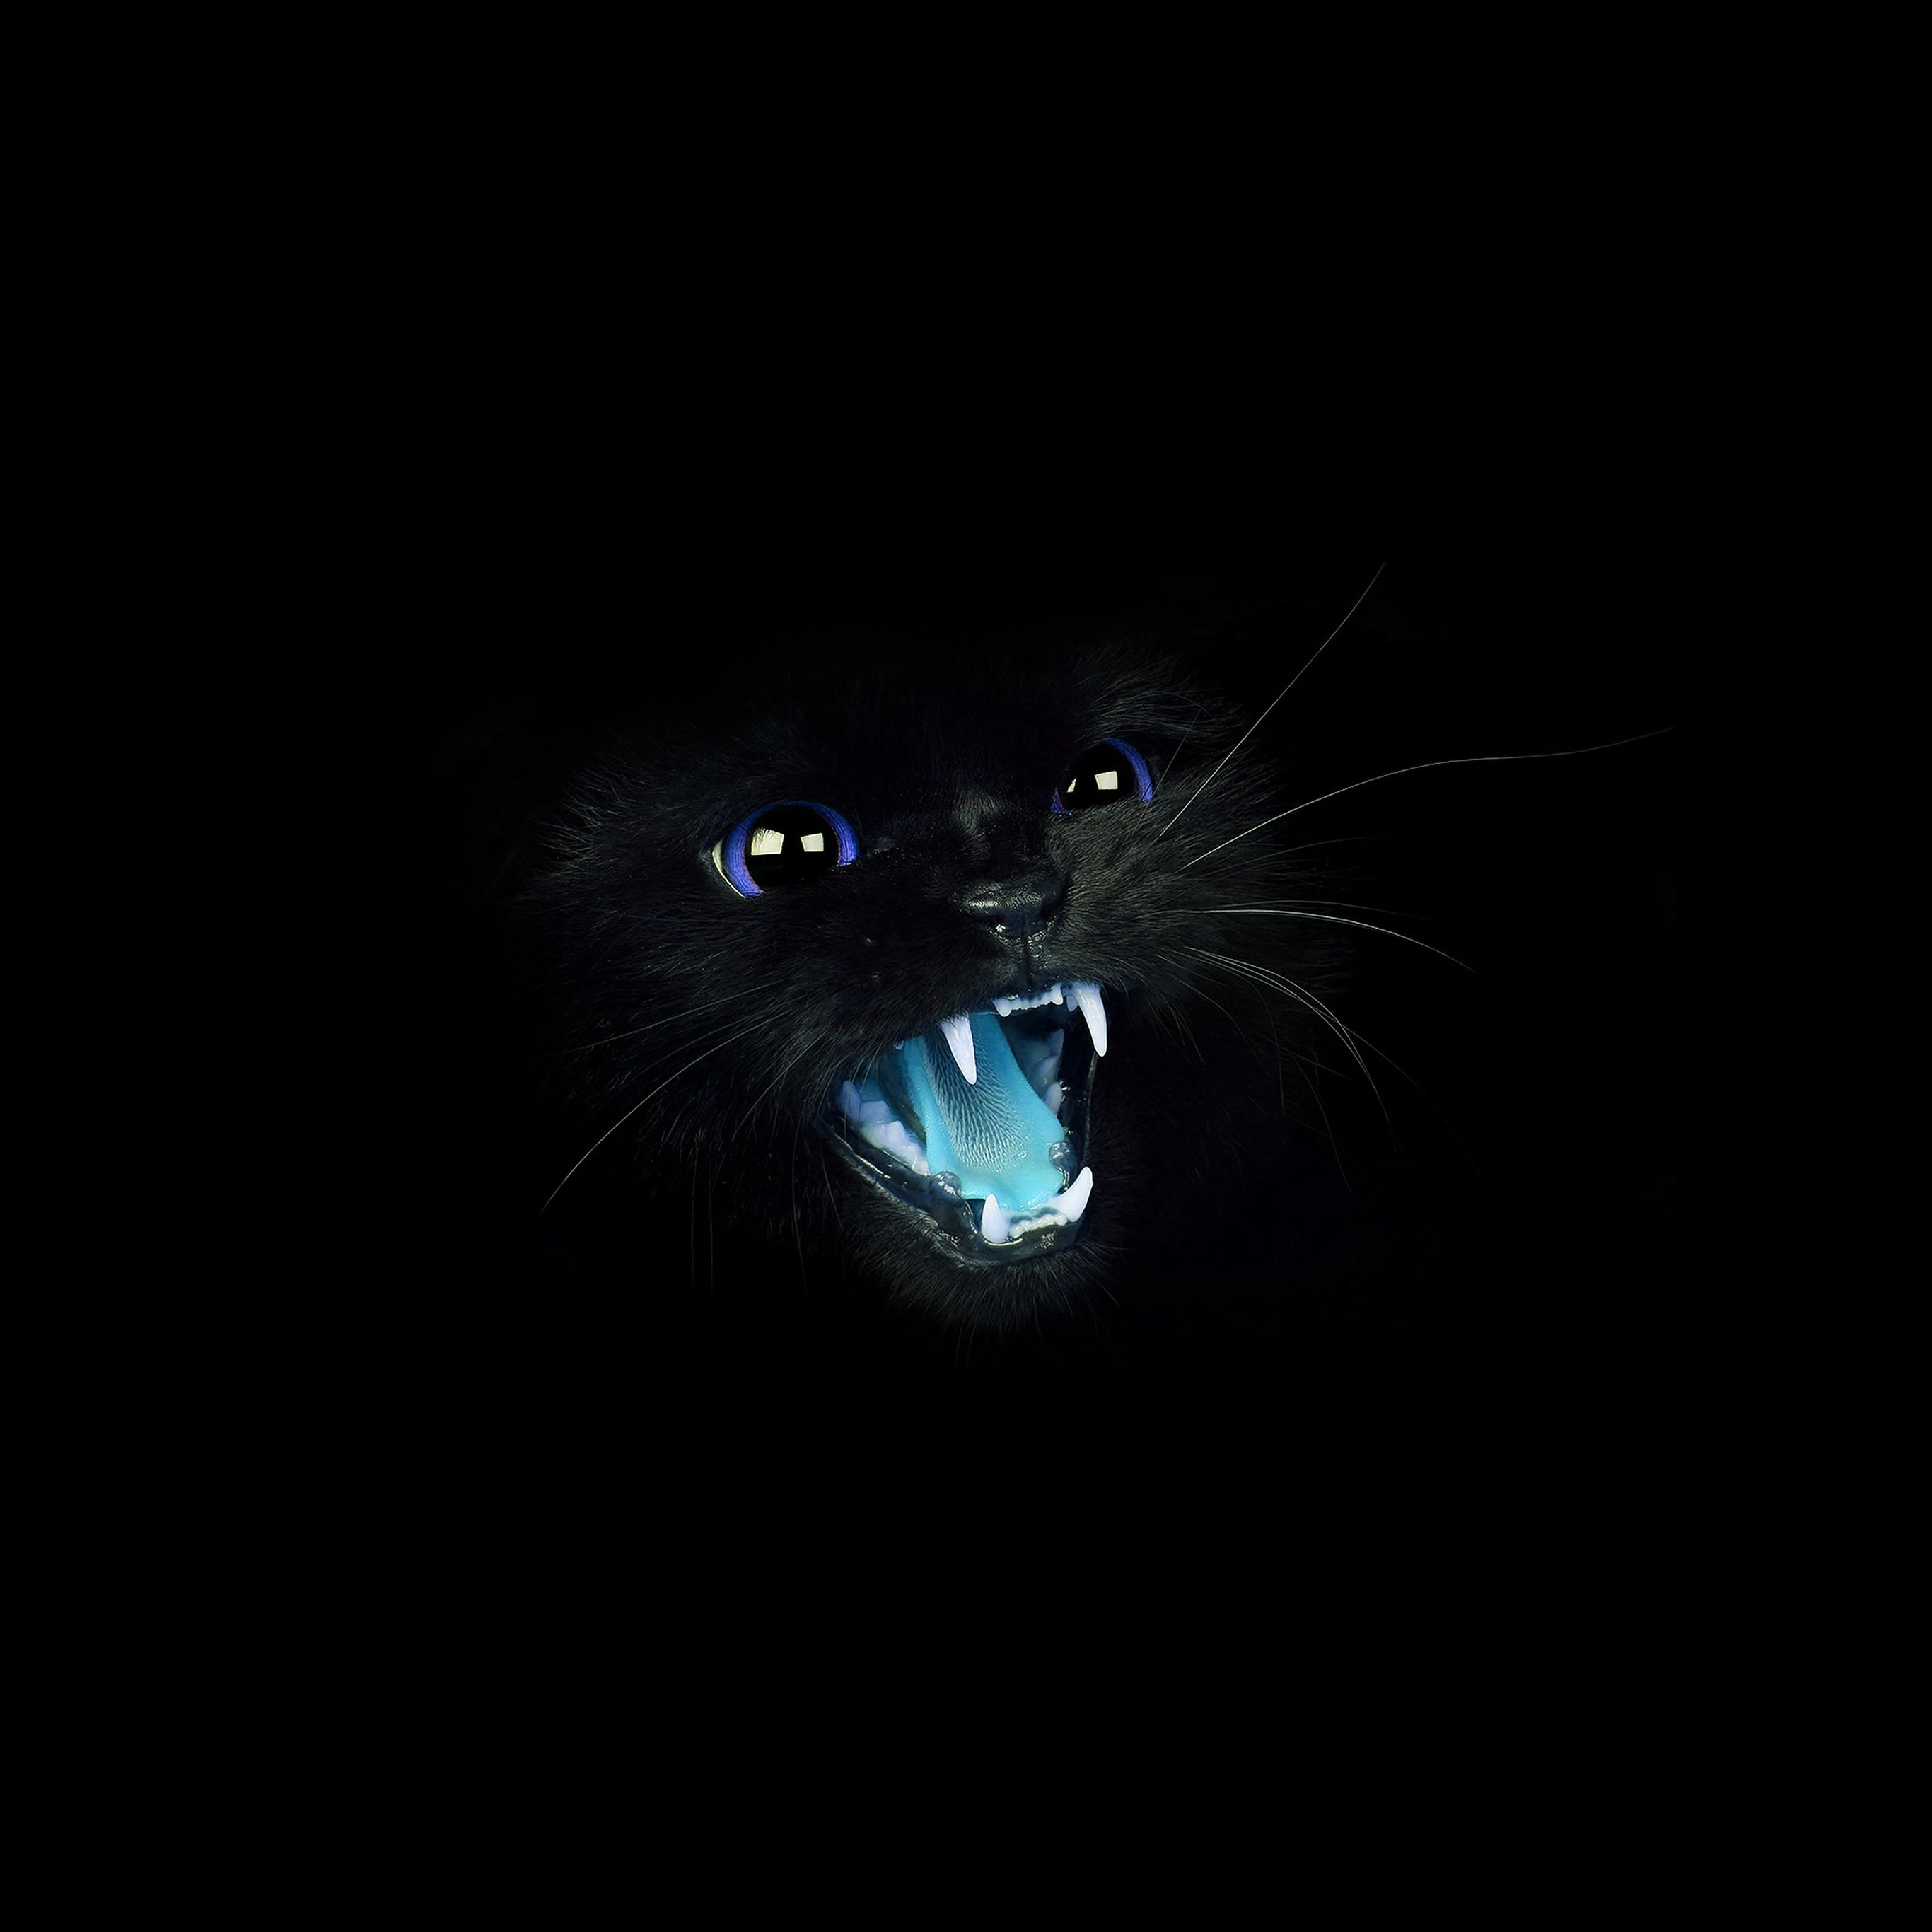 Black Cat Blue Eye Roar Animal Cute